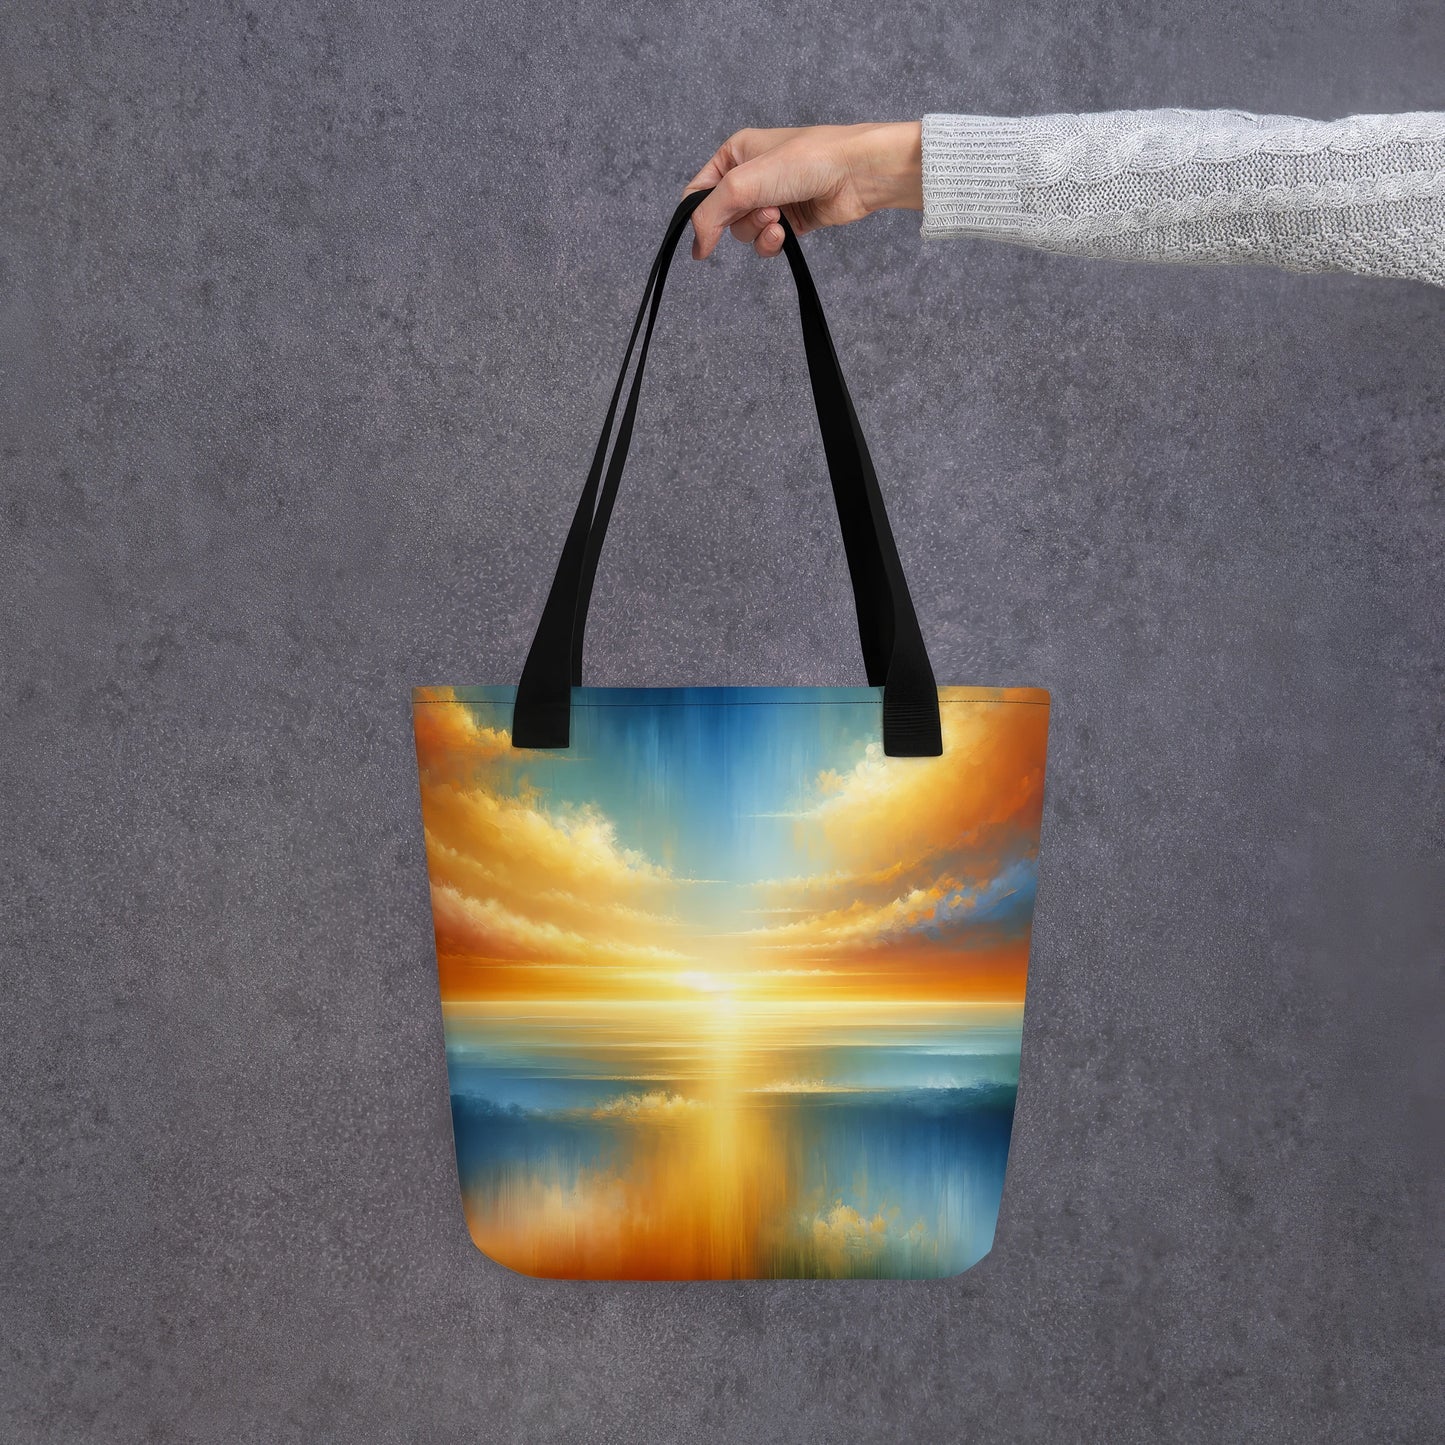 Abstract Art Tote Bag: Horizon of Hopes